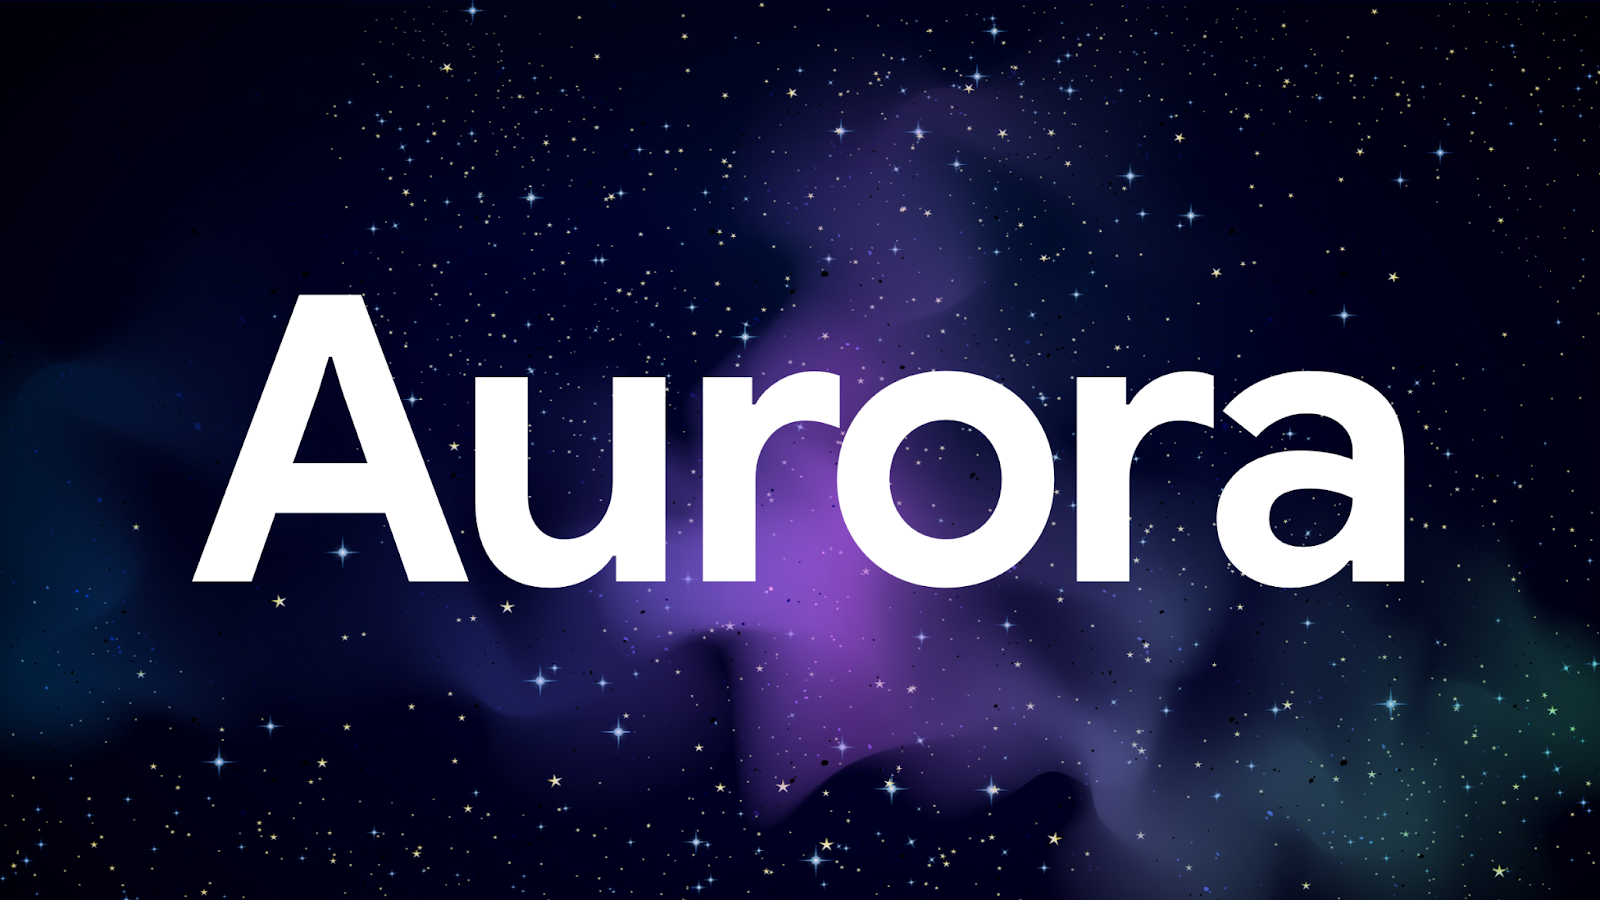 Chrome 成立 Aurora 项目组，将与开源网络框架和工具展开合作